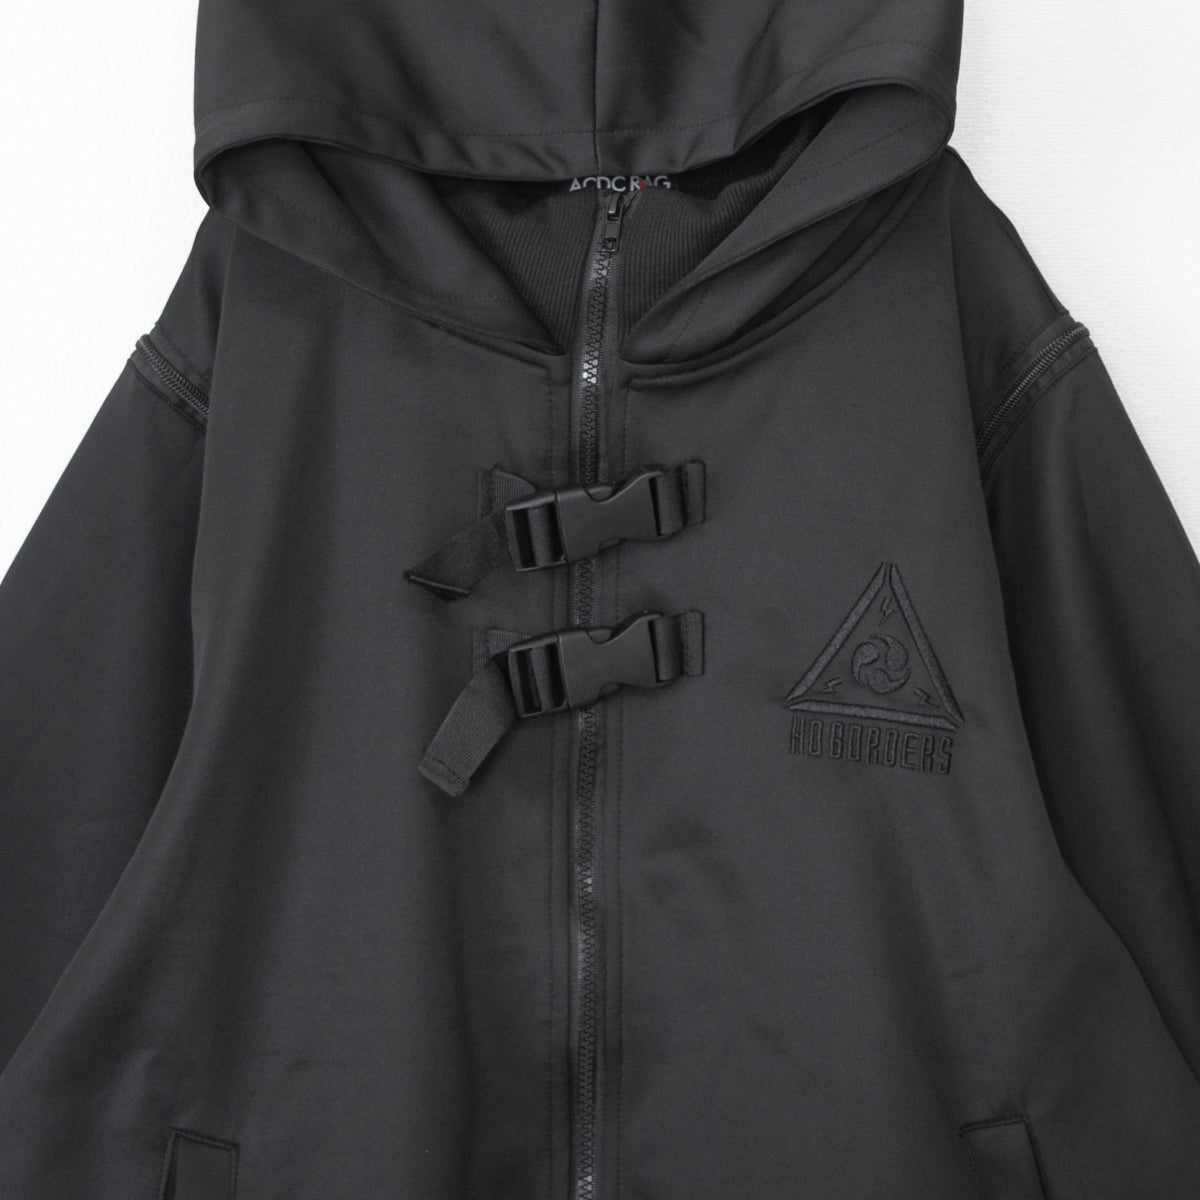 ACDC RAG CYBER PUNK vortex kimono jacket BLACK